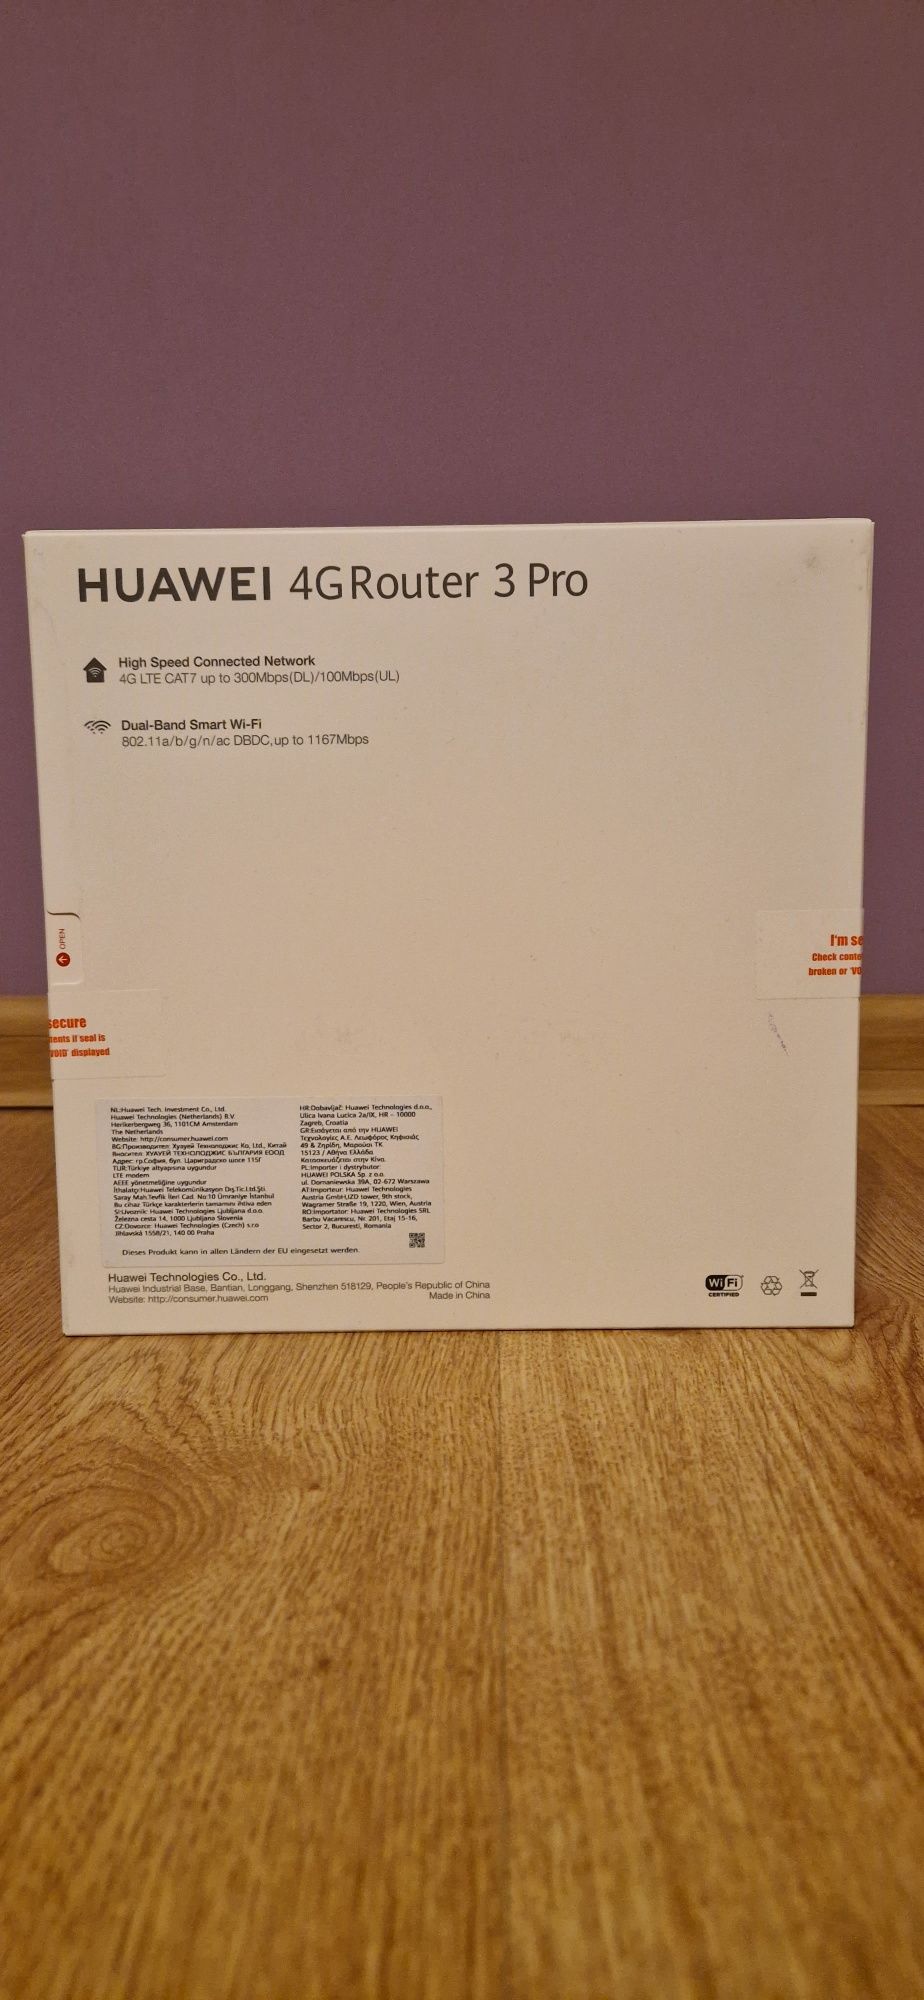 Huawei 4G router 3 pro model B535-232